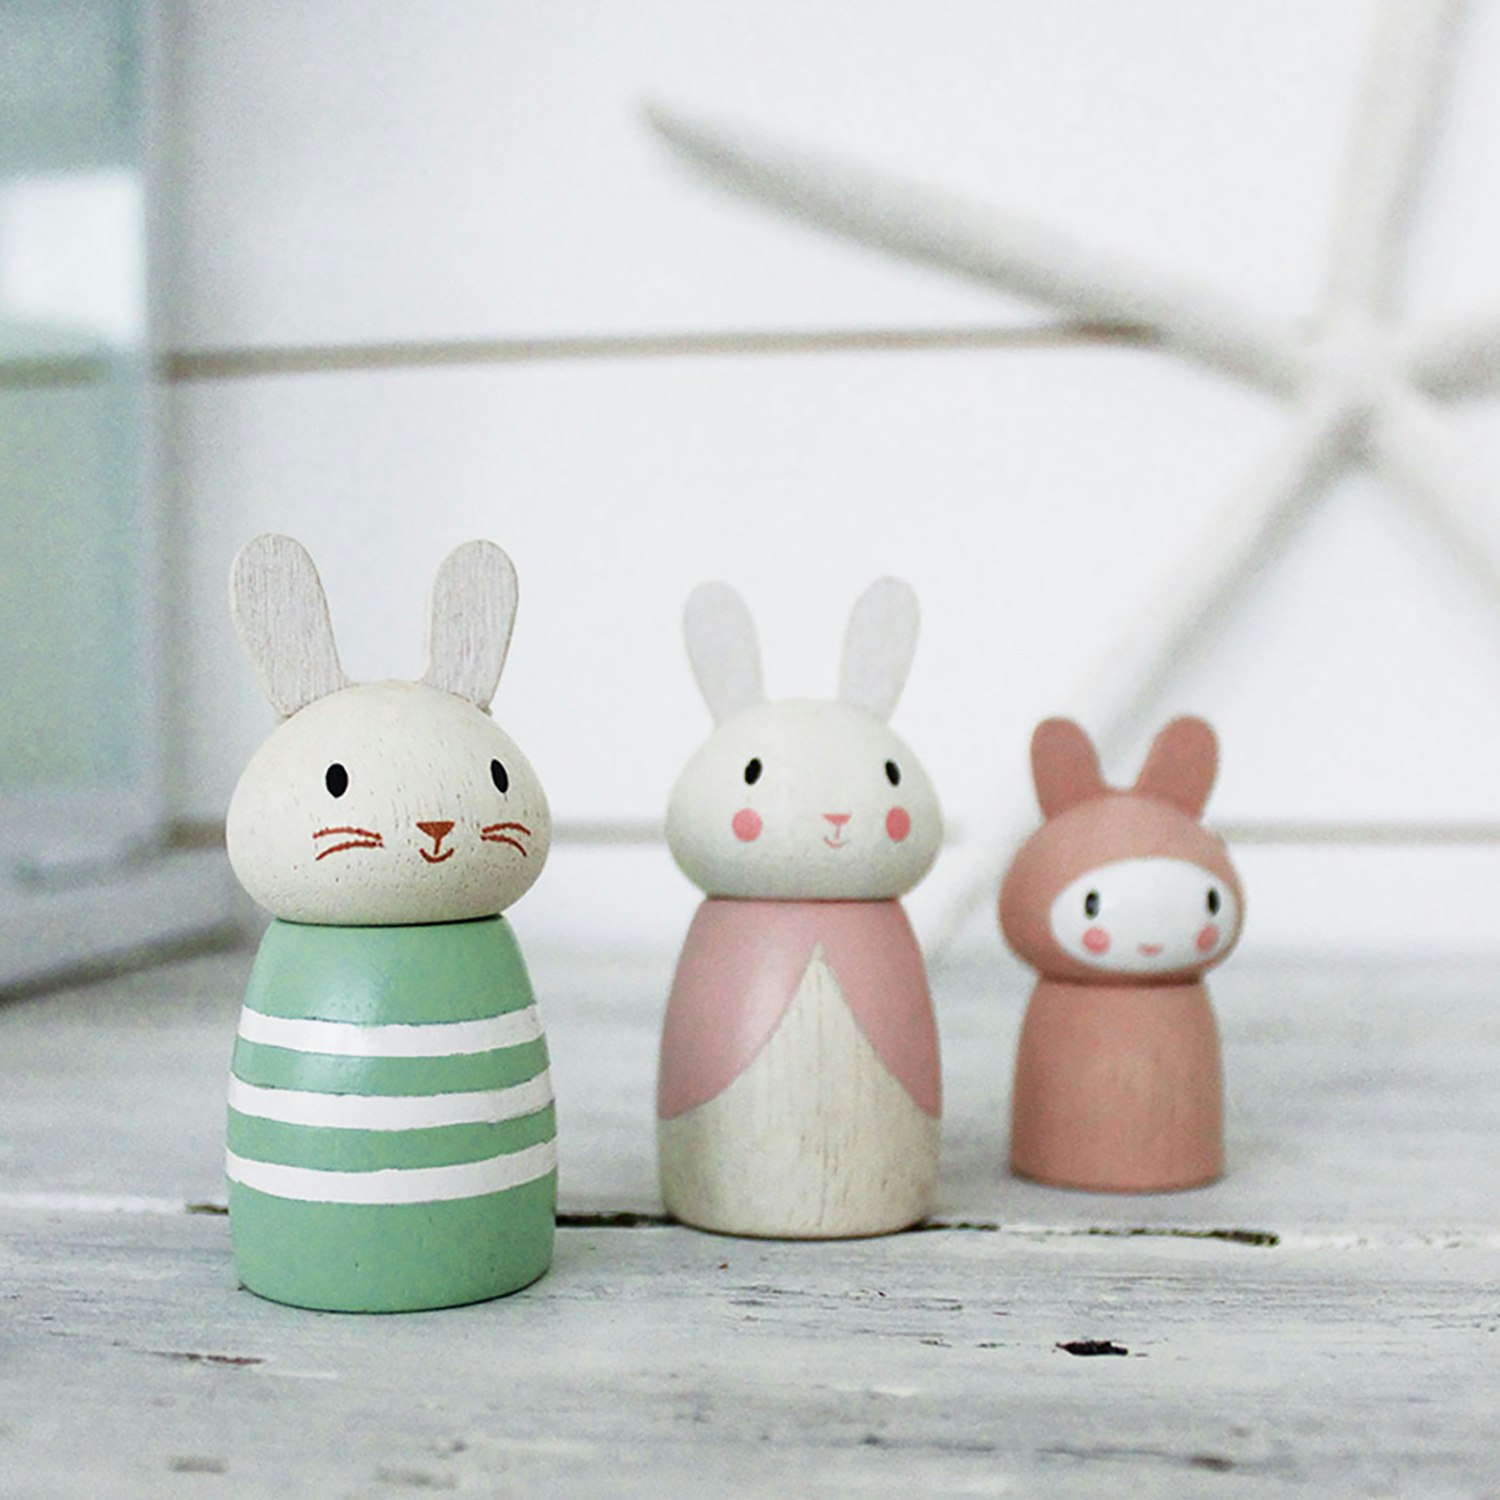 Småfolk - Kaniner, Tender leaf toys